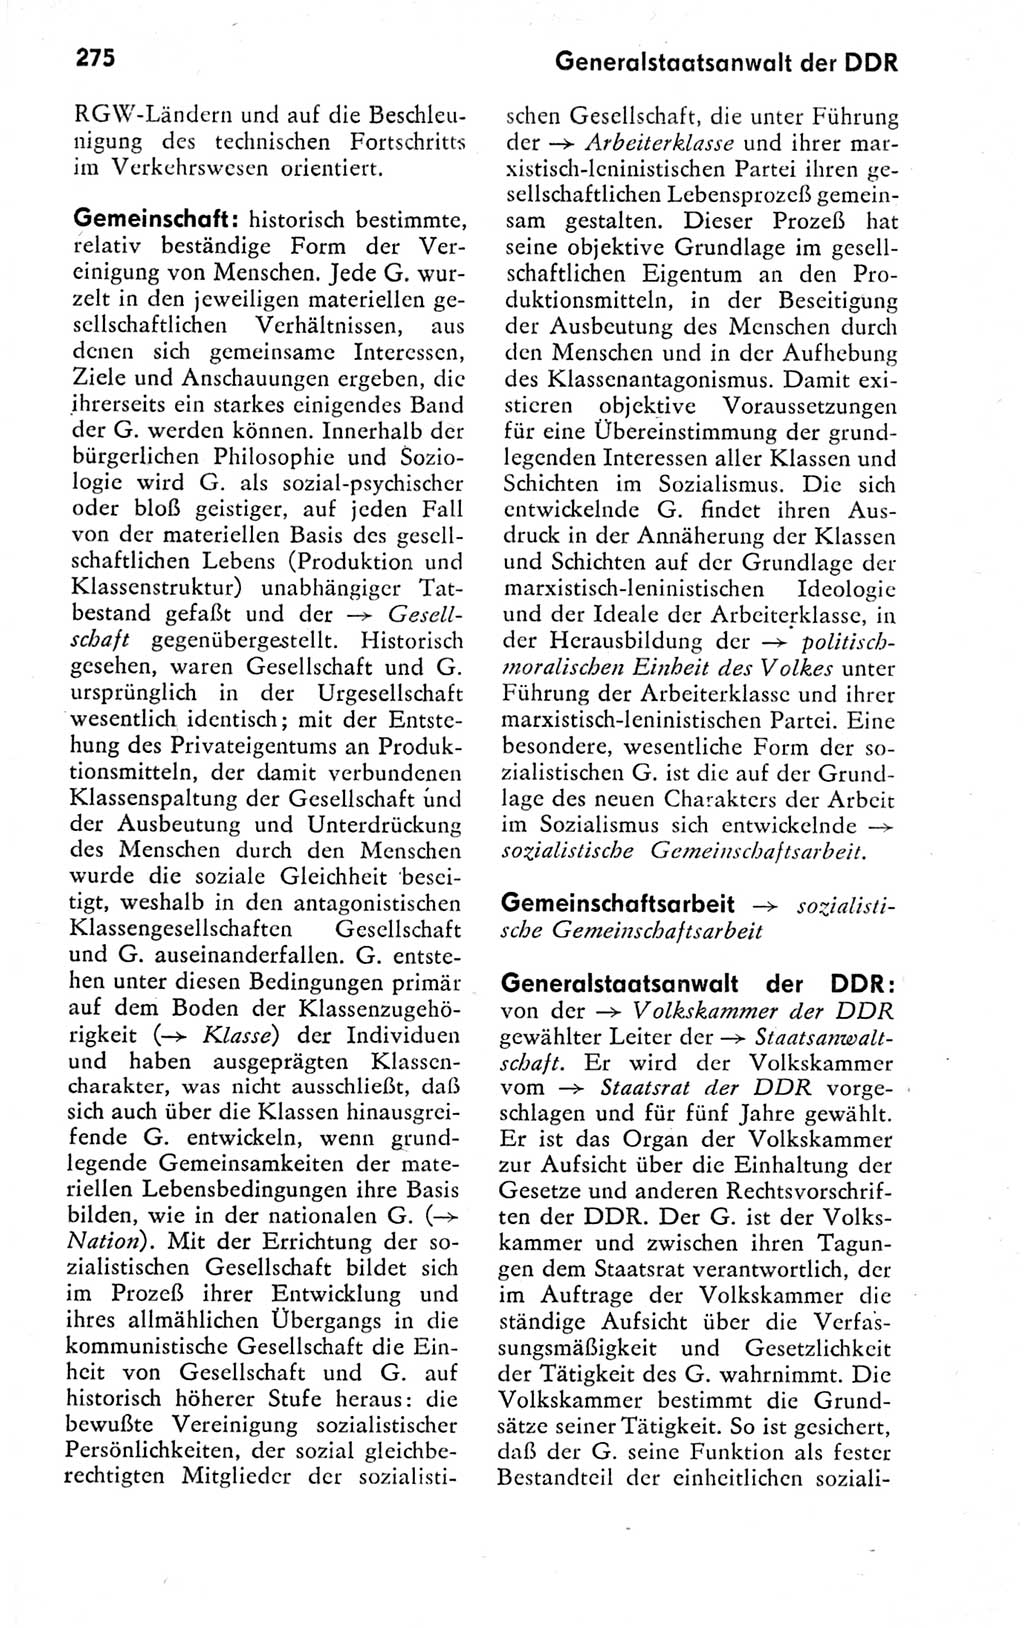 Kleines politisches Wörterbuch [Deutsche Demokratische Republik (DDR)] 1978, Seite 275 (Kl. pol. Wb. DDR 1978, S. 275)